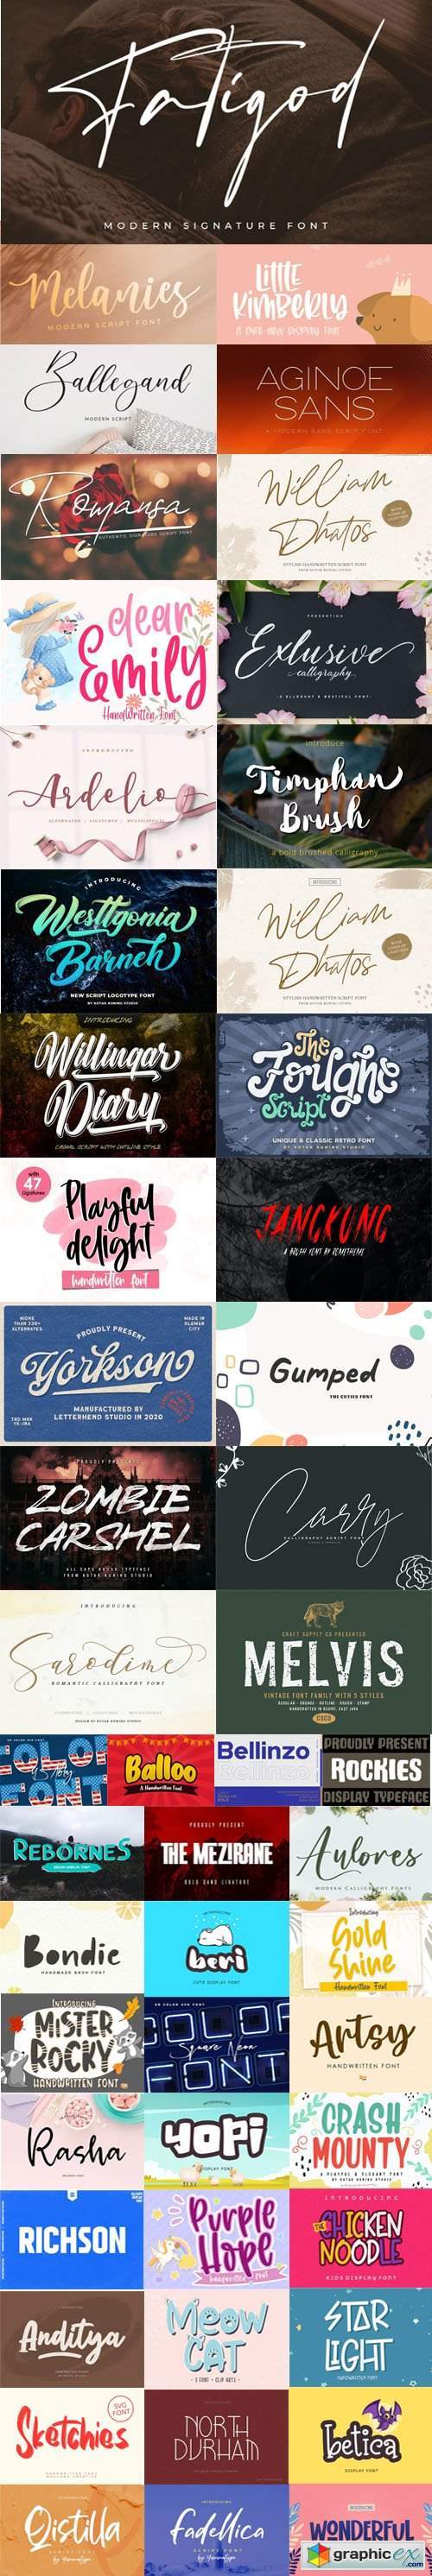 53 New Creative Fonts 2020